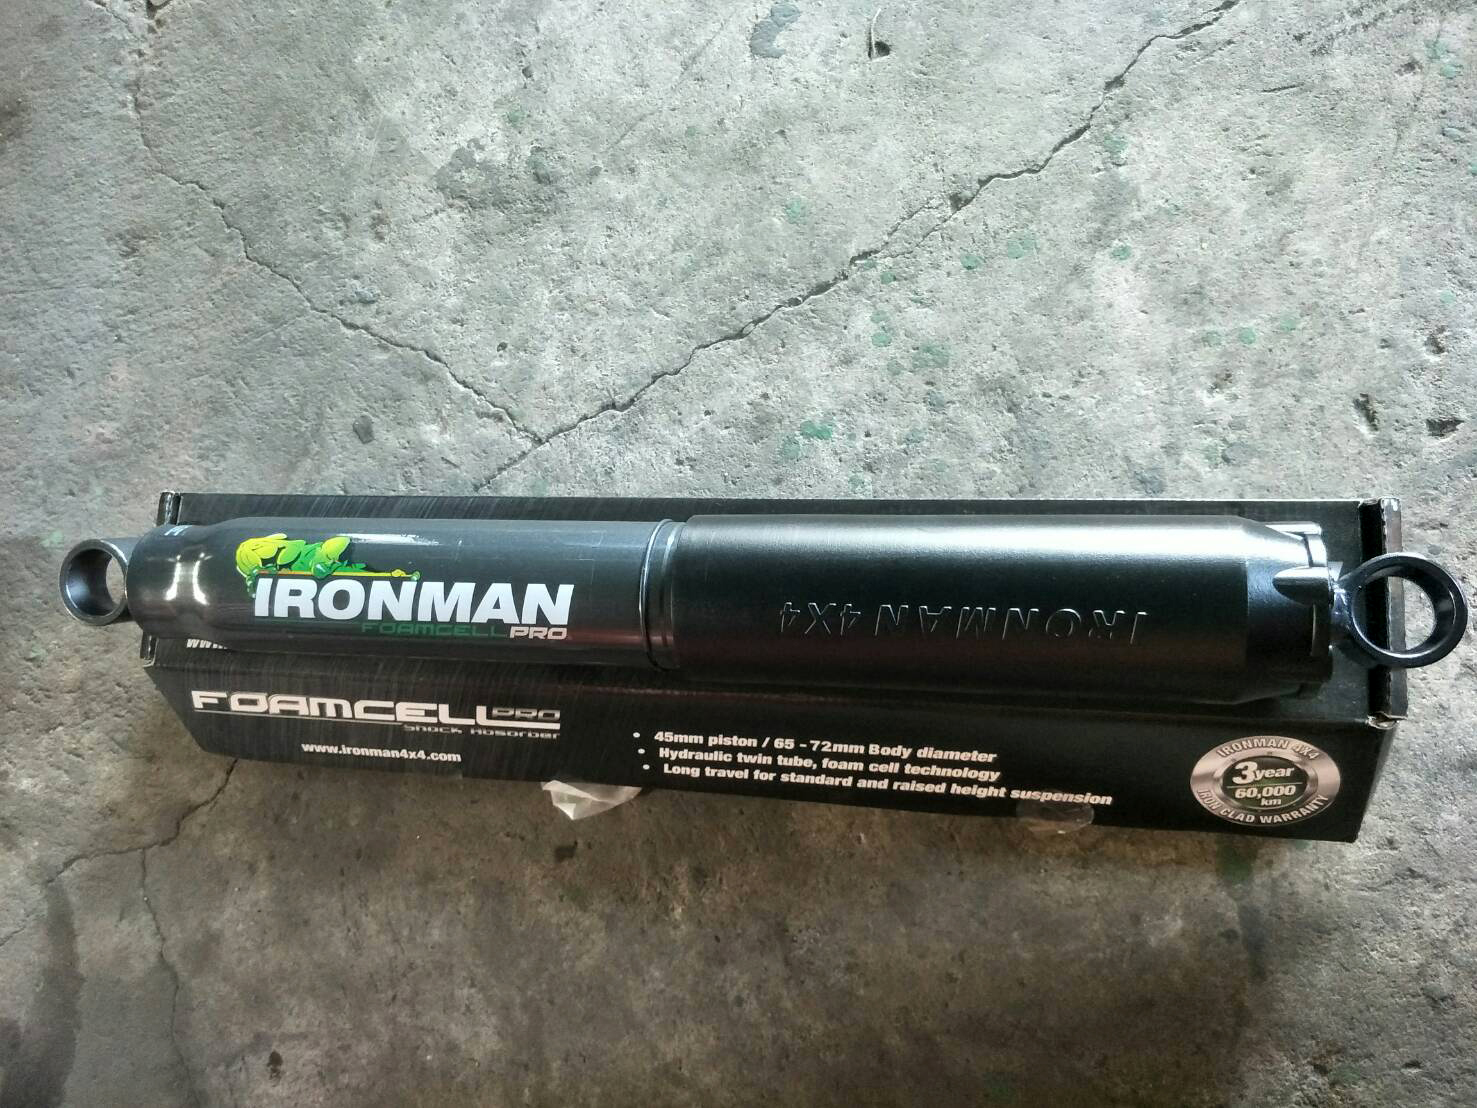 จัดส่งโช๊คหลัง Ironman รุ่น Fome cell รหัส เบอร์ 45081FE ใส่ V-CROSS 4WD ไปอ.ปลวกแดง จ.ระยอง ขอบคุณลูกค้ามากครับ #Ironman #teentoashop
